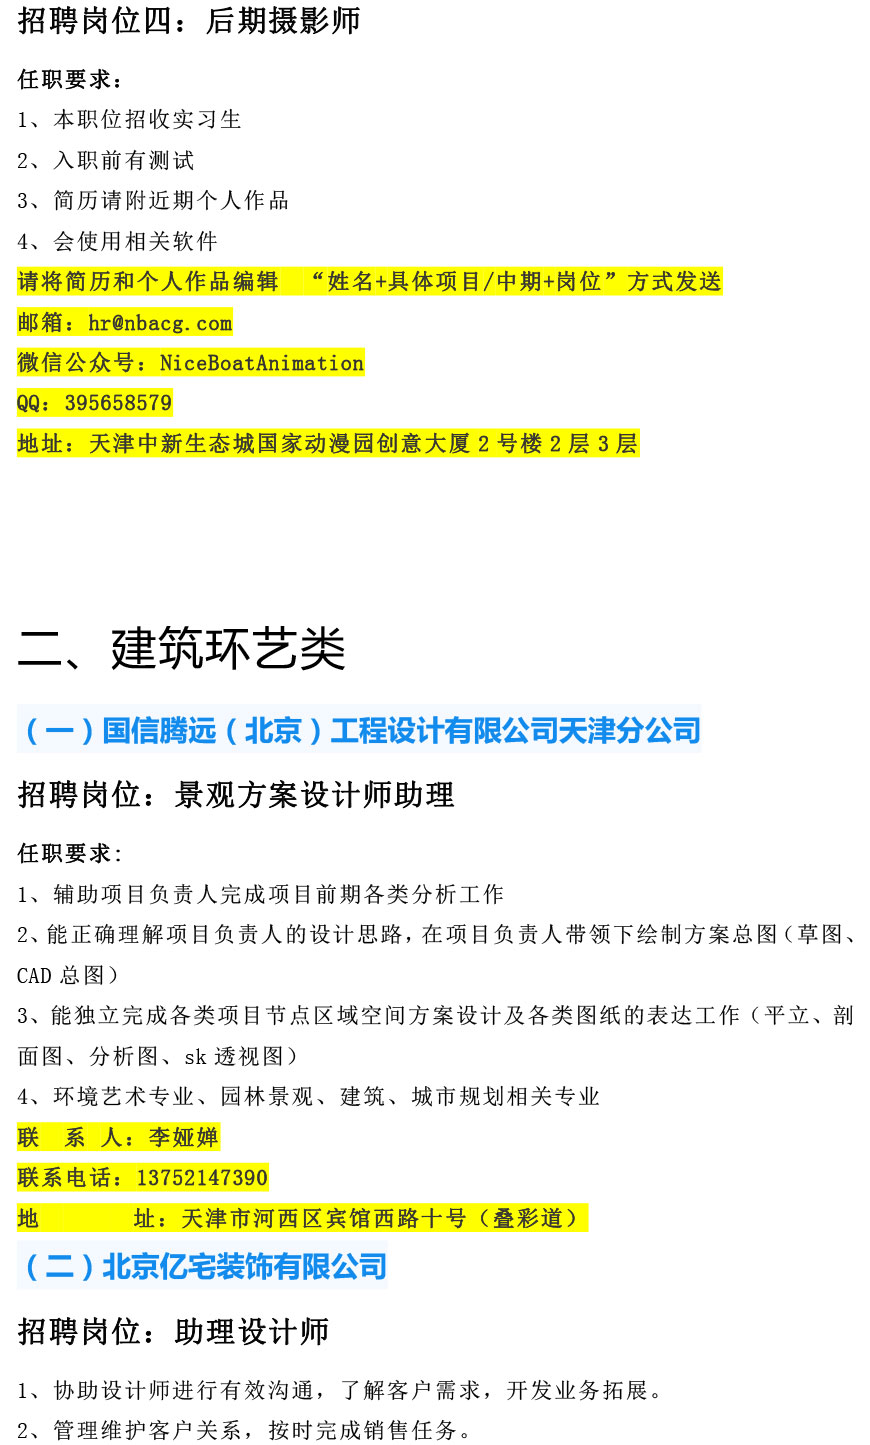 天津工艺美术职业天下足球网2021年12月招聘信息-3.jpg